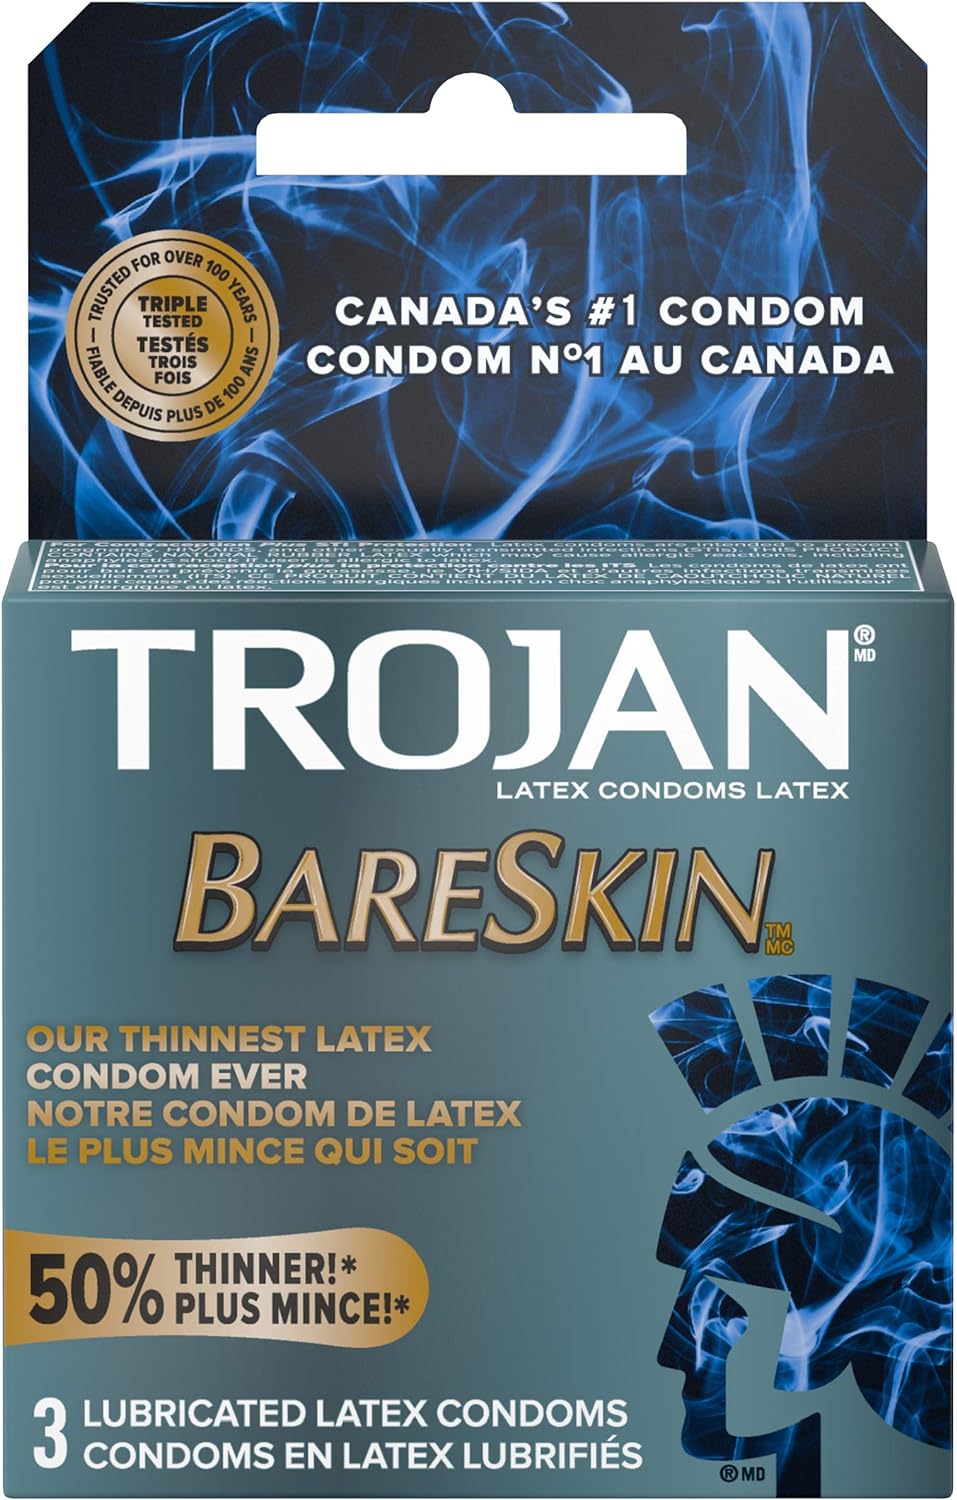 Trojan Bareskin - Pack of 3